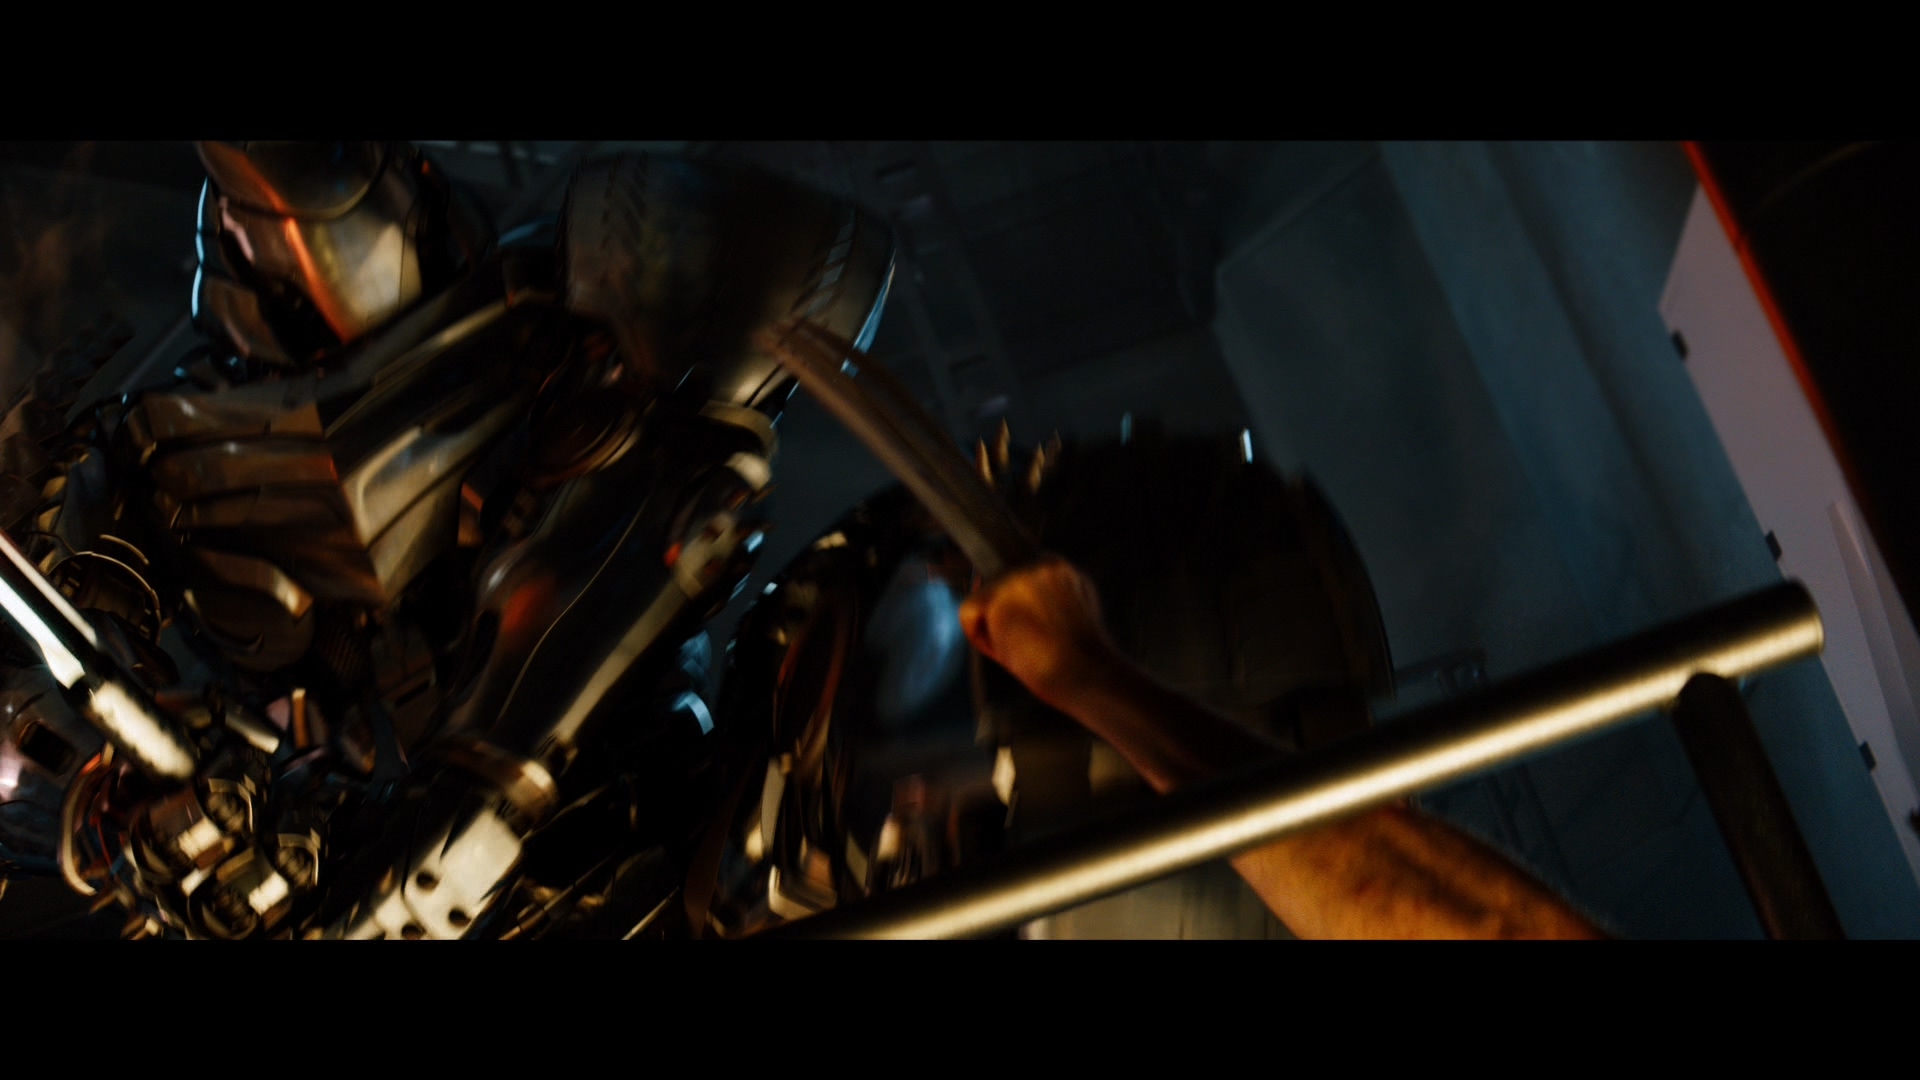 [金刚狼2].The.Wolverine.2013.3D.TW.BluRay.1080p.AVC.DTS-HD.MA.7.1-OMEGA    46.33G3 n, c6 W& S1 Y-13.jpg